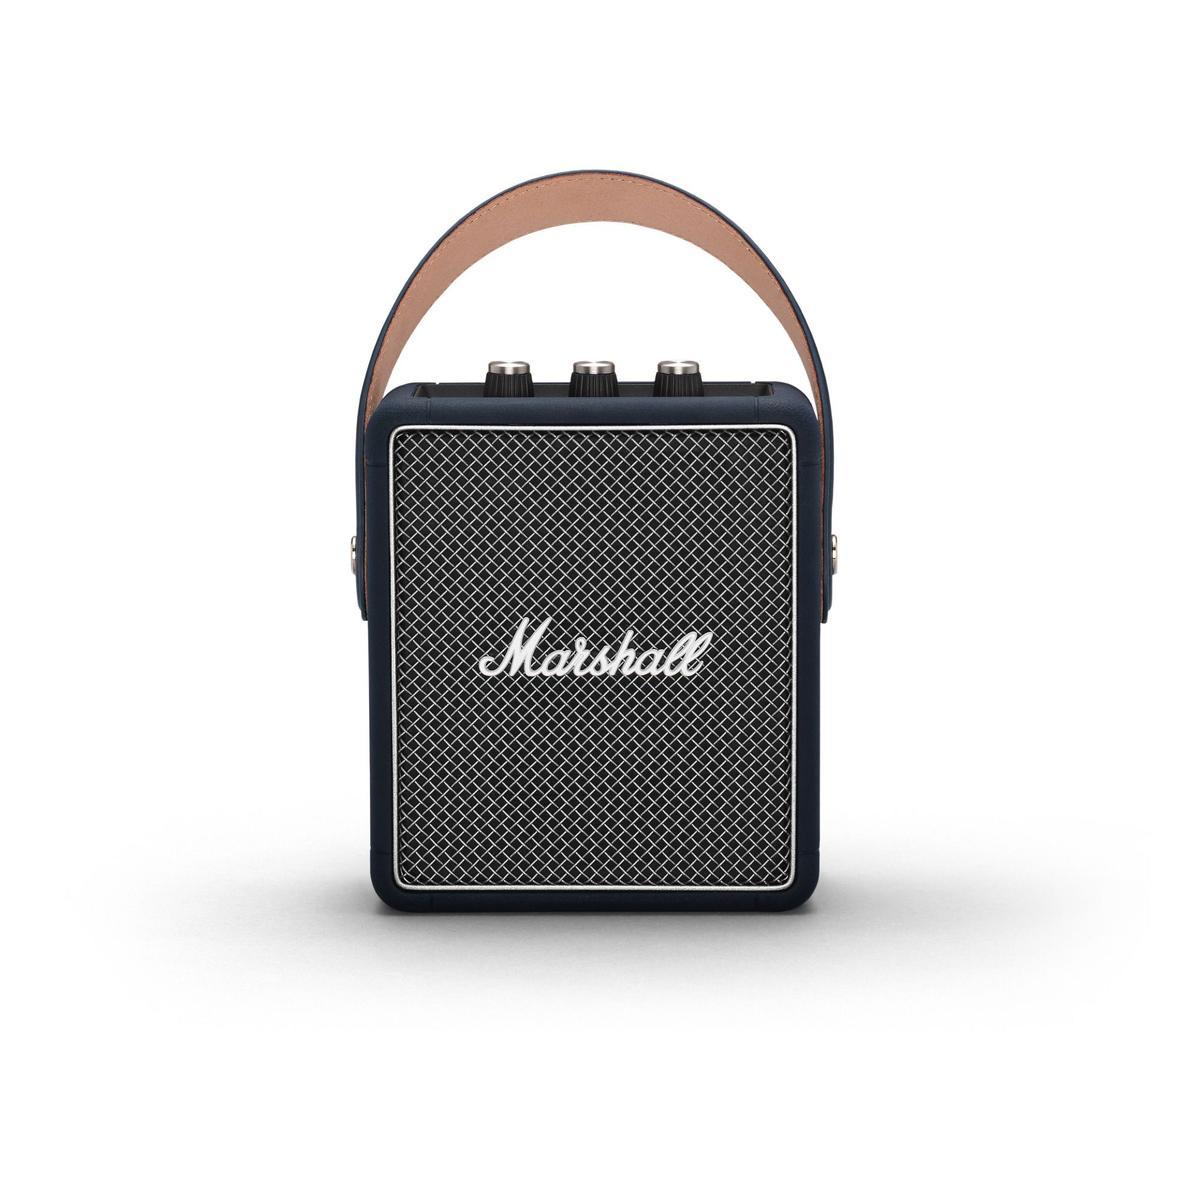 Altavoz portátil Bluetooth de edición limitada en azul índigo de Marshall